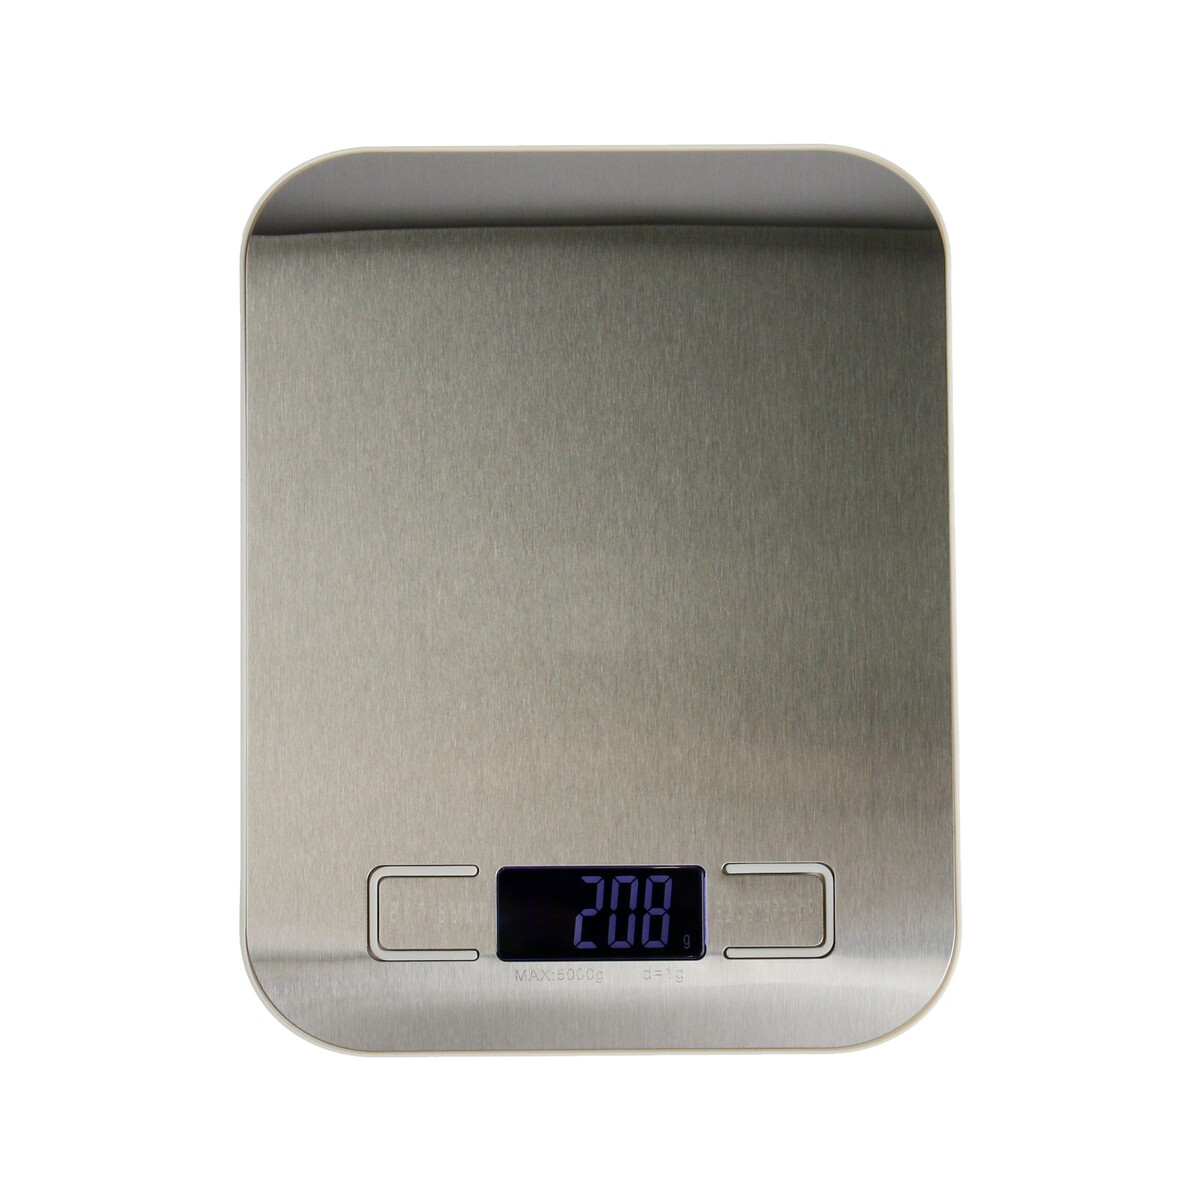 Весы кухонные luazon lve-028, электронные, до 5 кг, металл весы кухонные luazon lvk 702 электронные до 7 кг белые